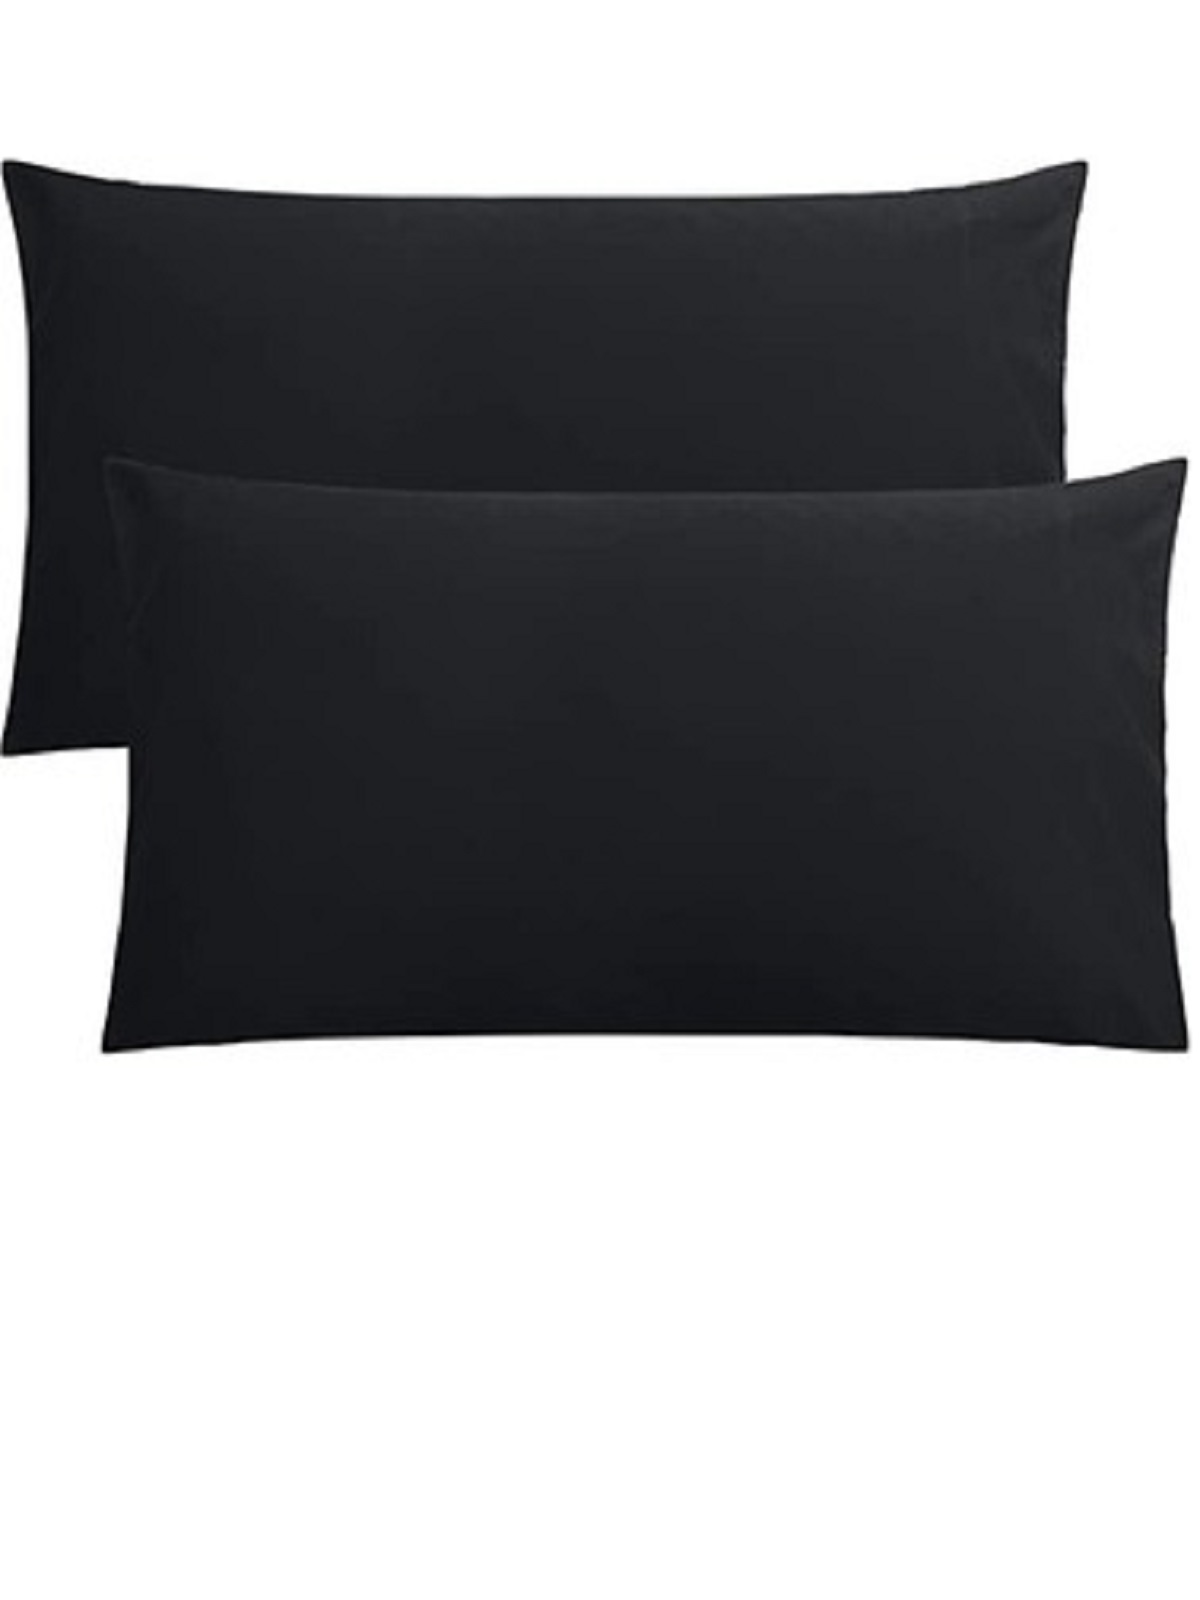 Modoo Yastık Kılıfı  Siyah Beyaz Lacivert Pamuklu 2'li 50x70 Cm